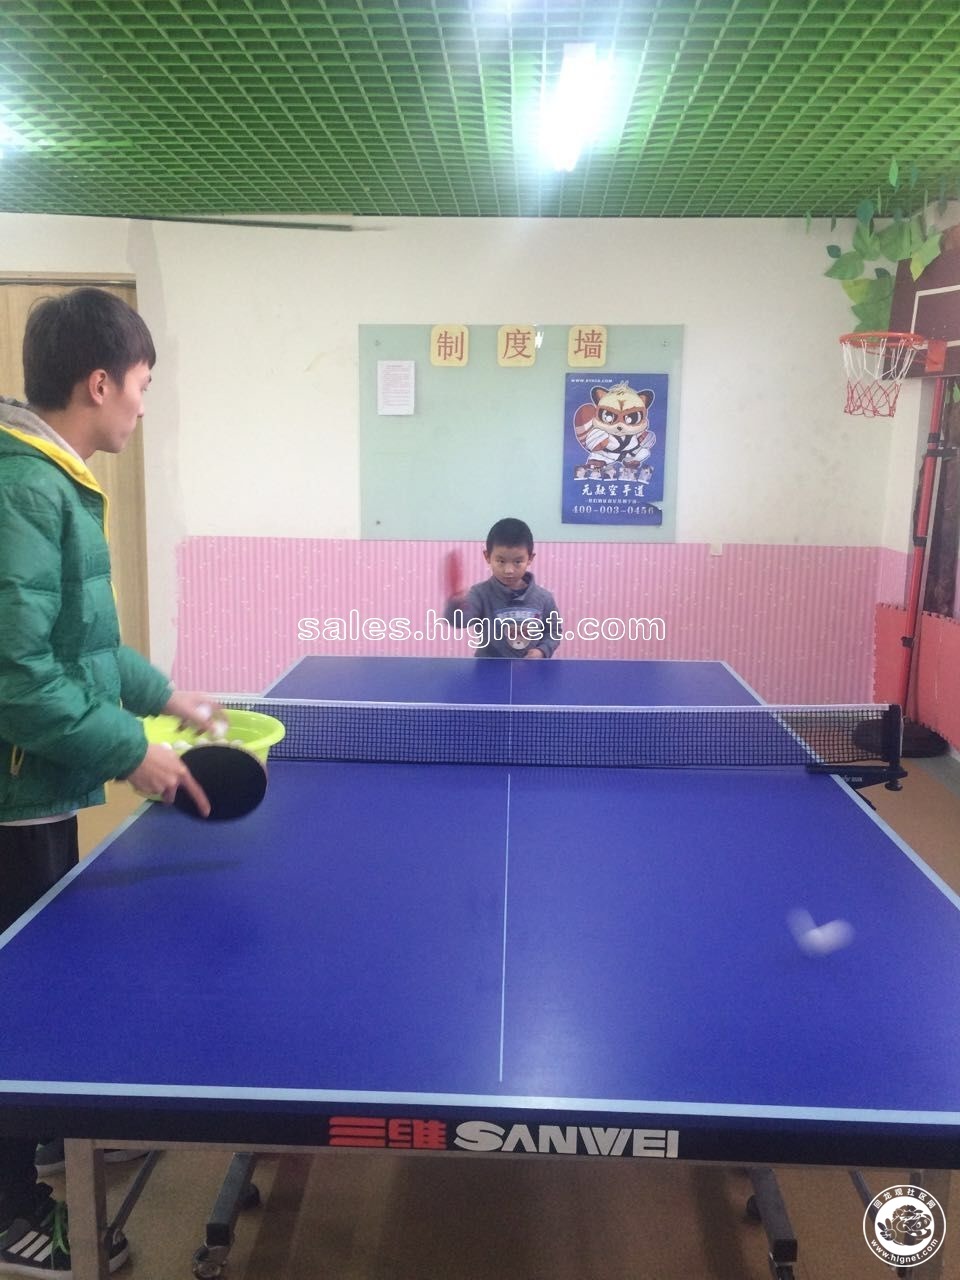 第18期冰羽俱乐部-少儿乒乓球培训班秋季班(随